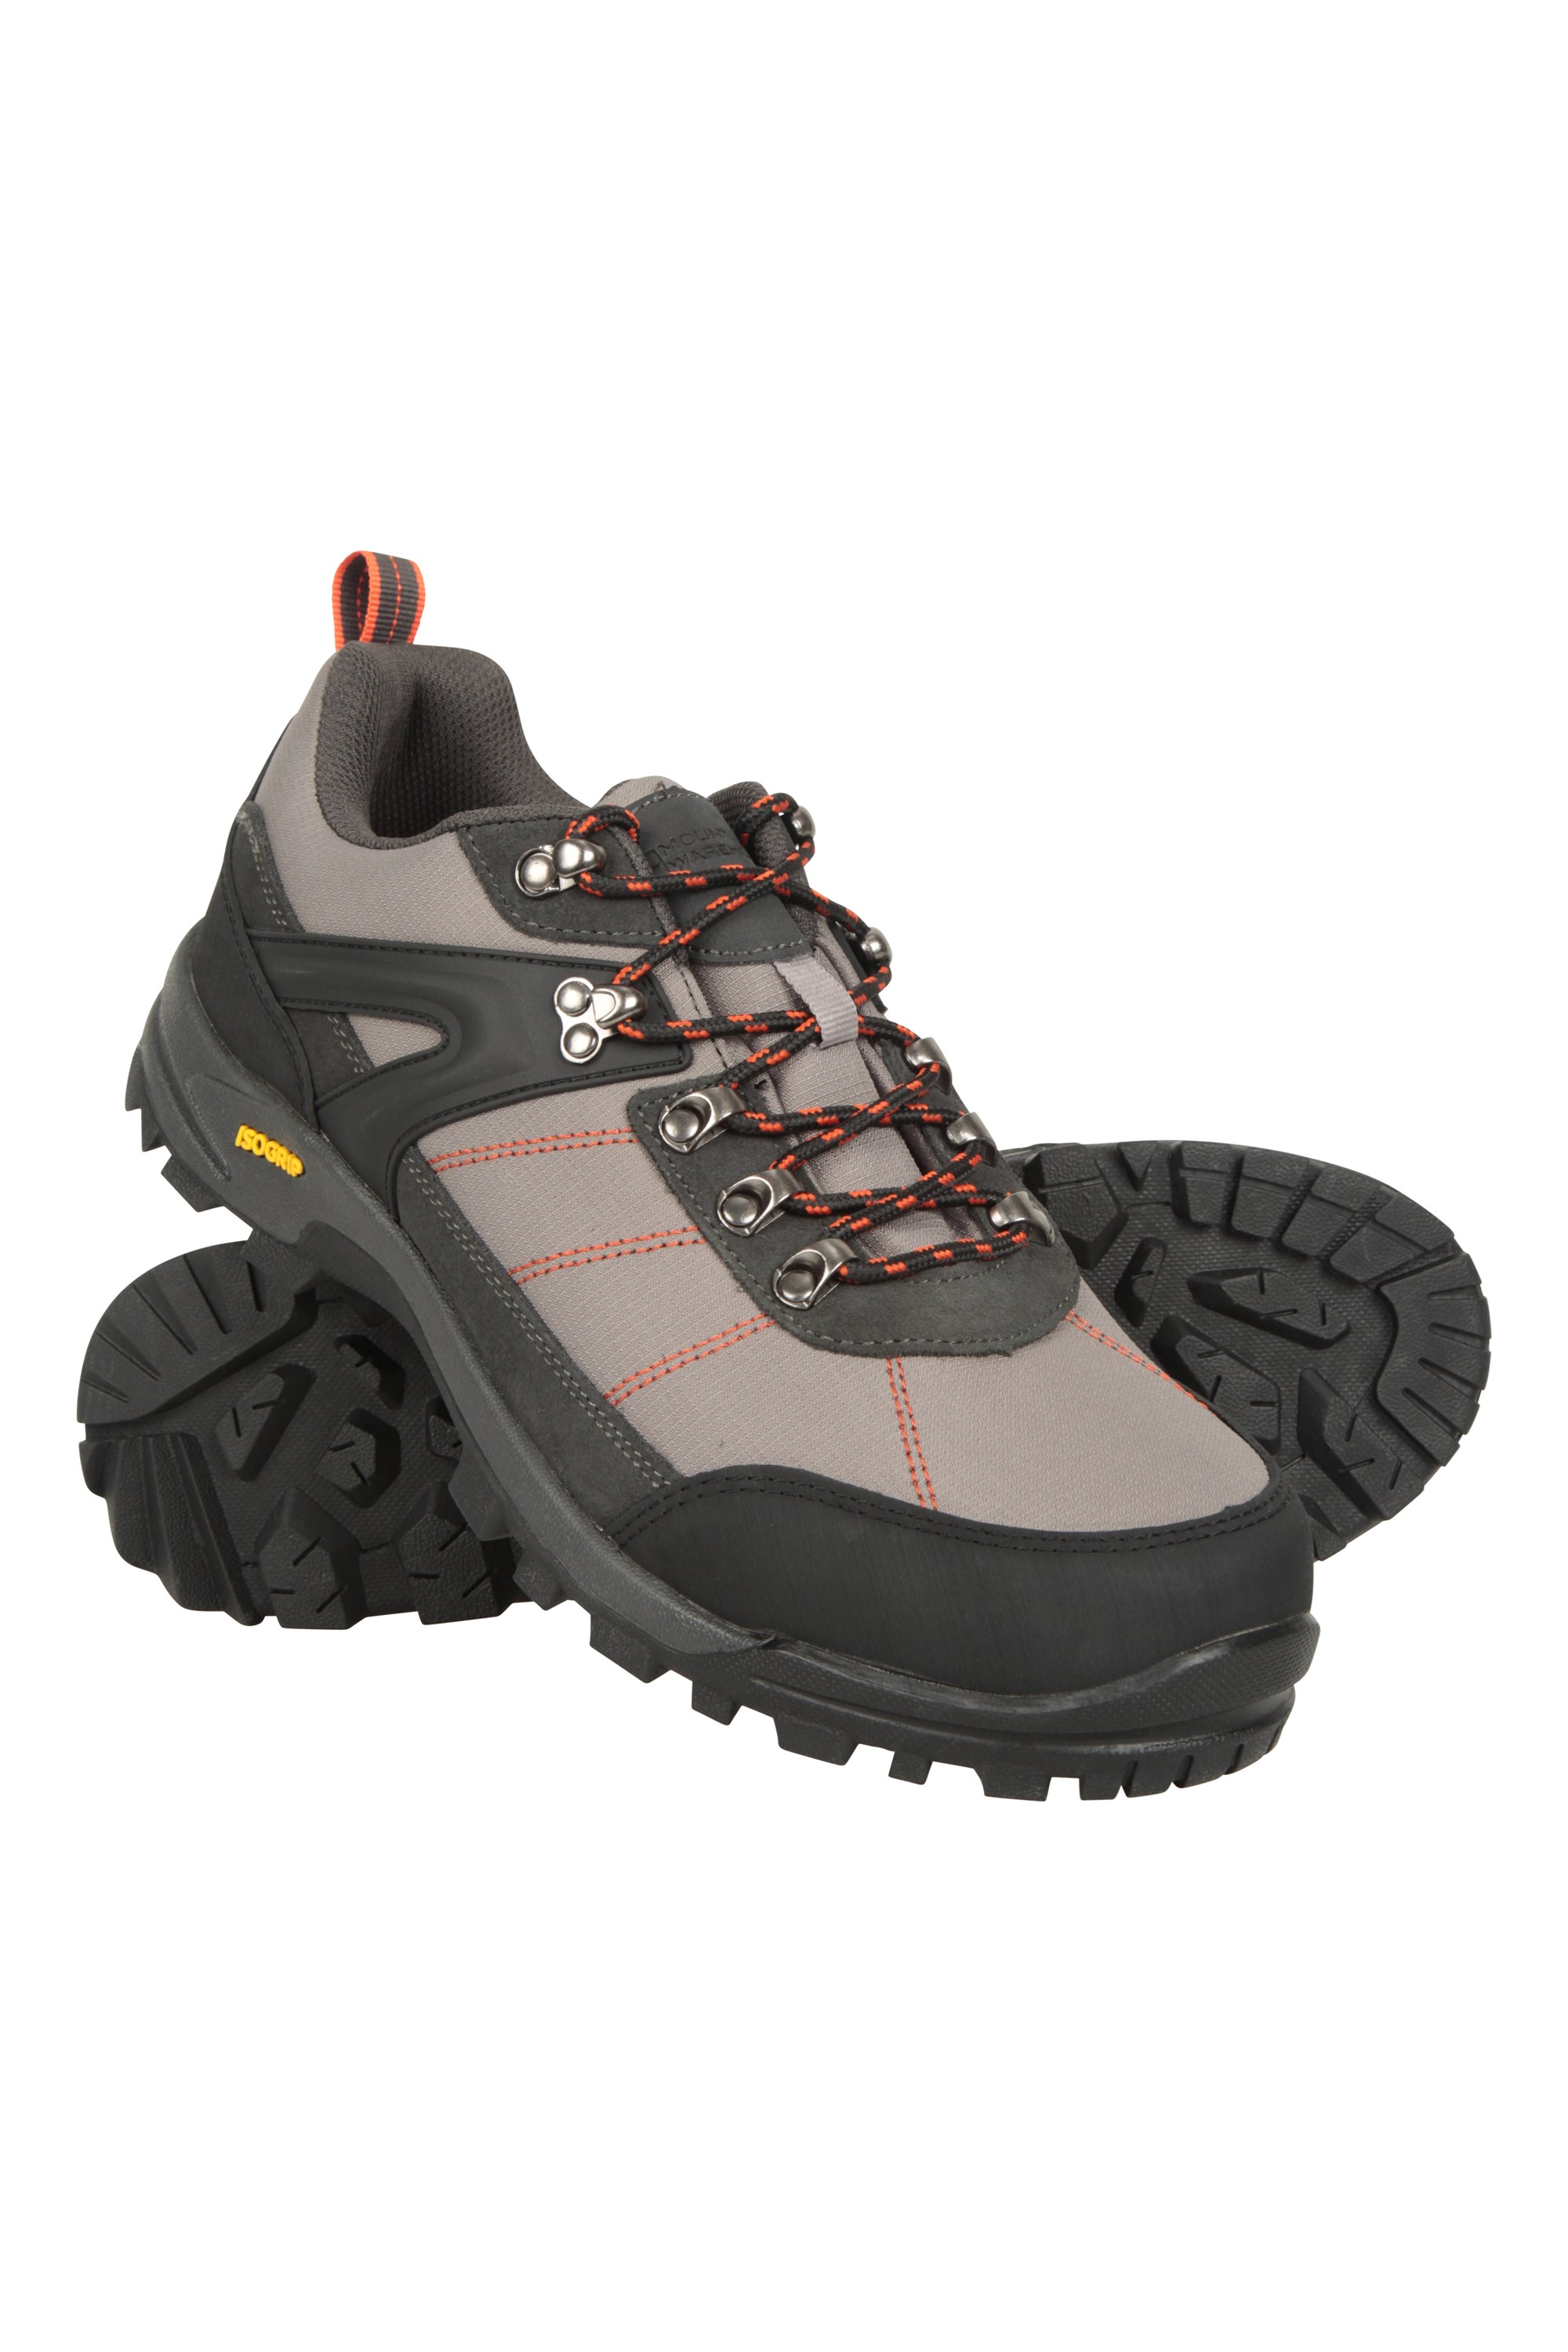 Storm Mens Waterproof IsoGrip Walking Shoes